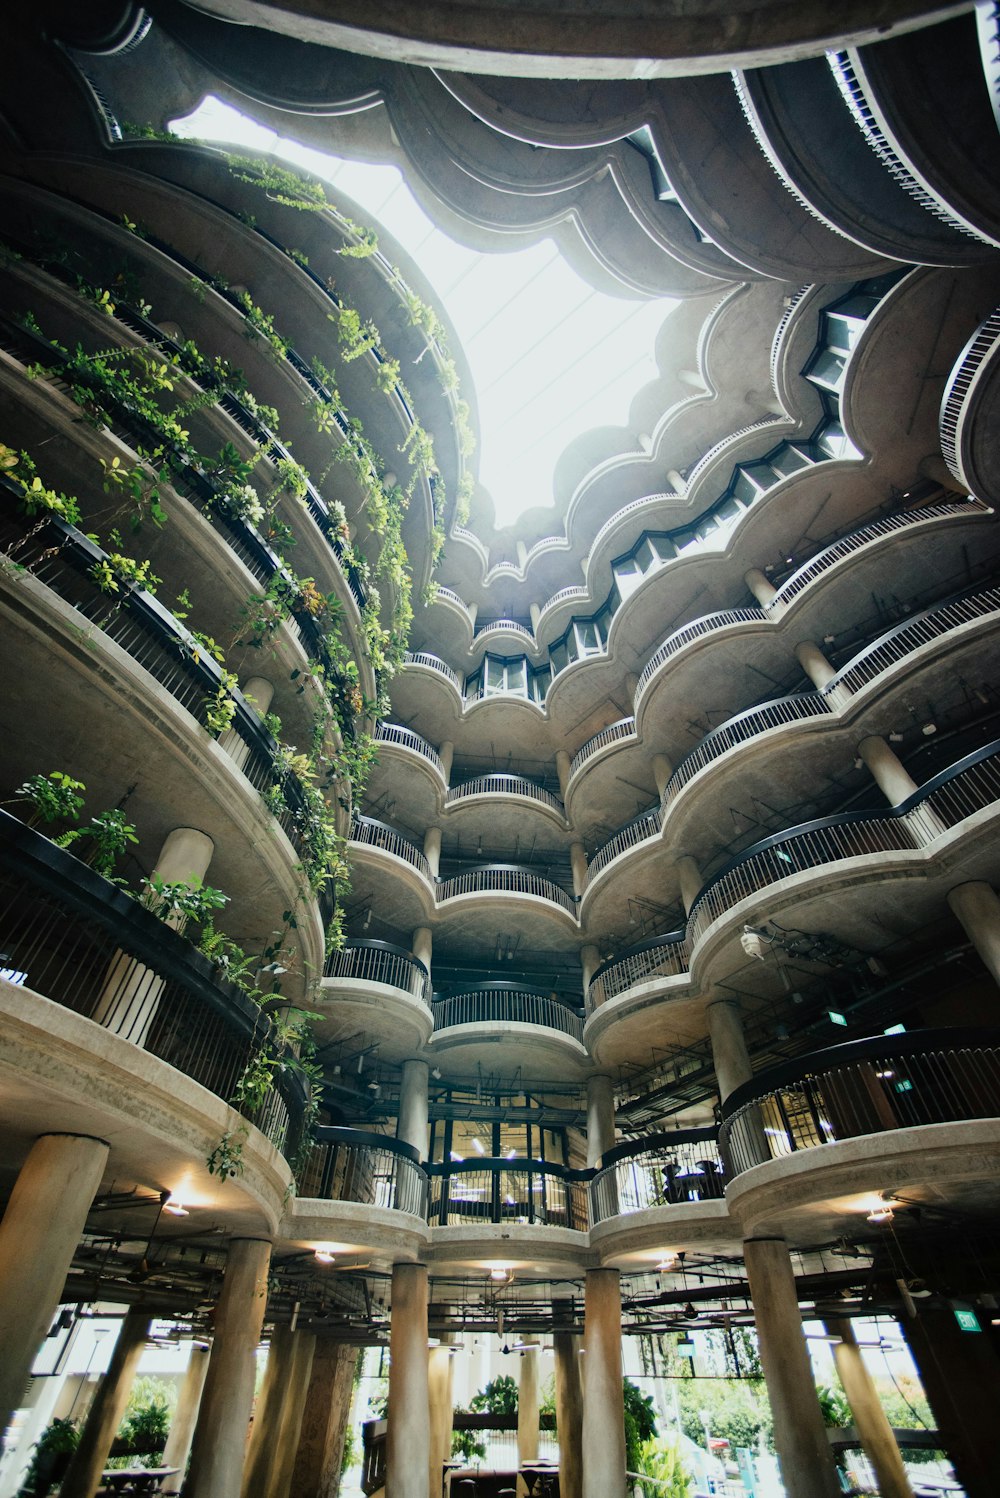 검은색 레일과 식물이 있는 갈색 건물의 로우 앵글 사진